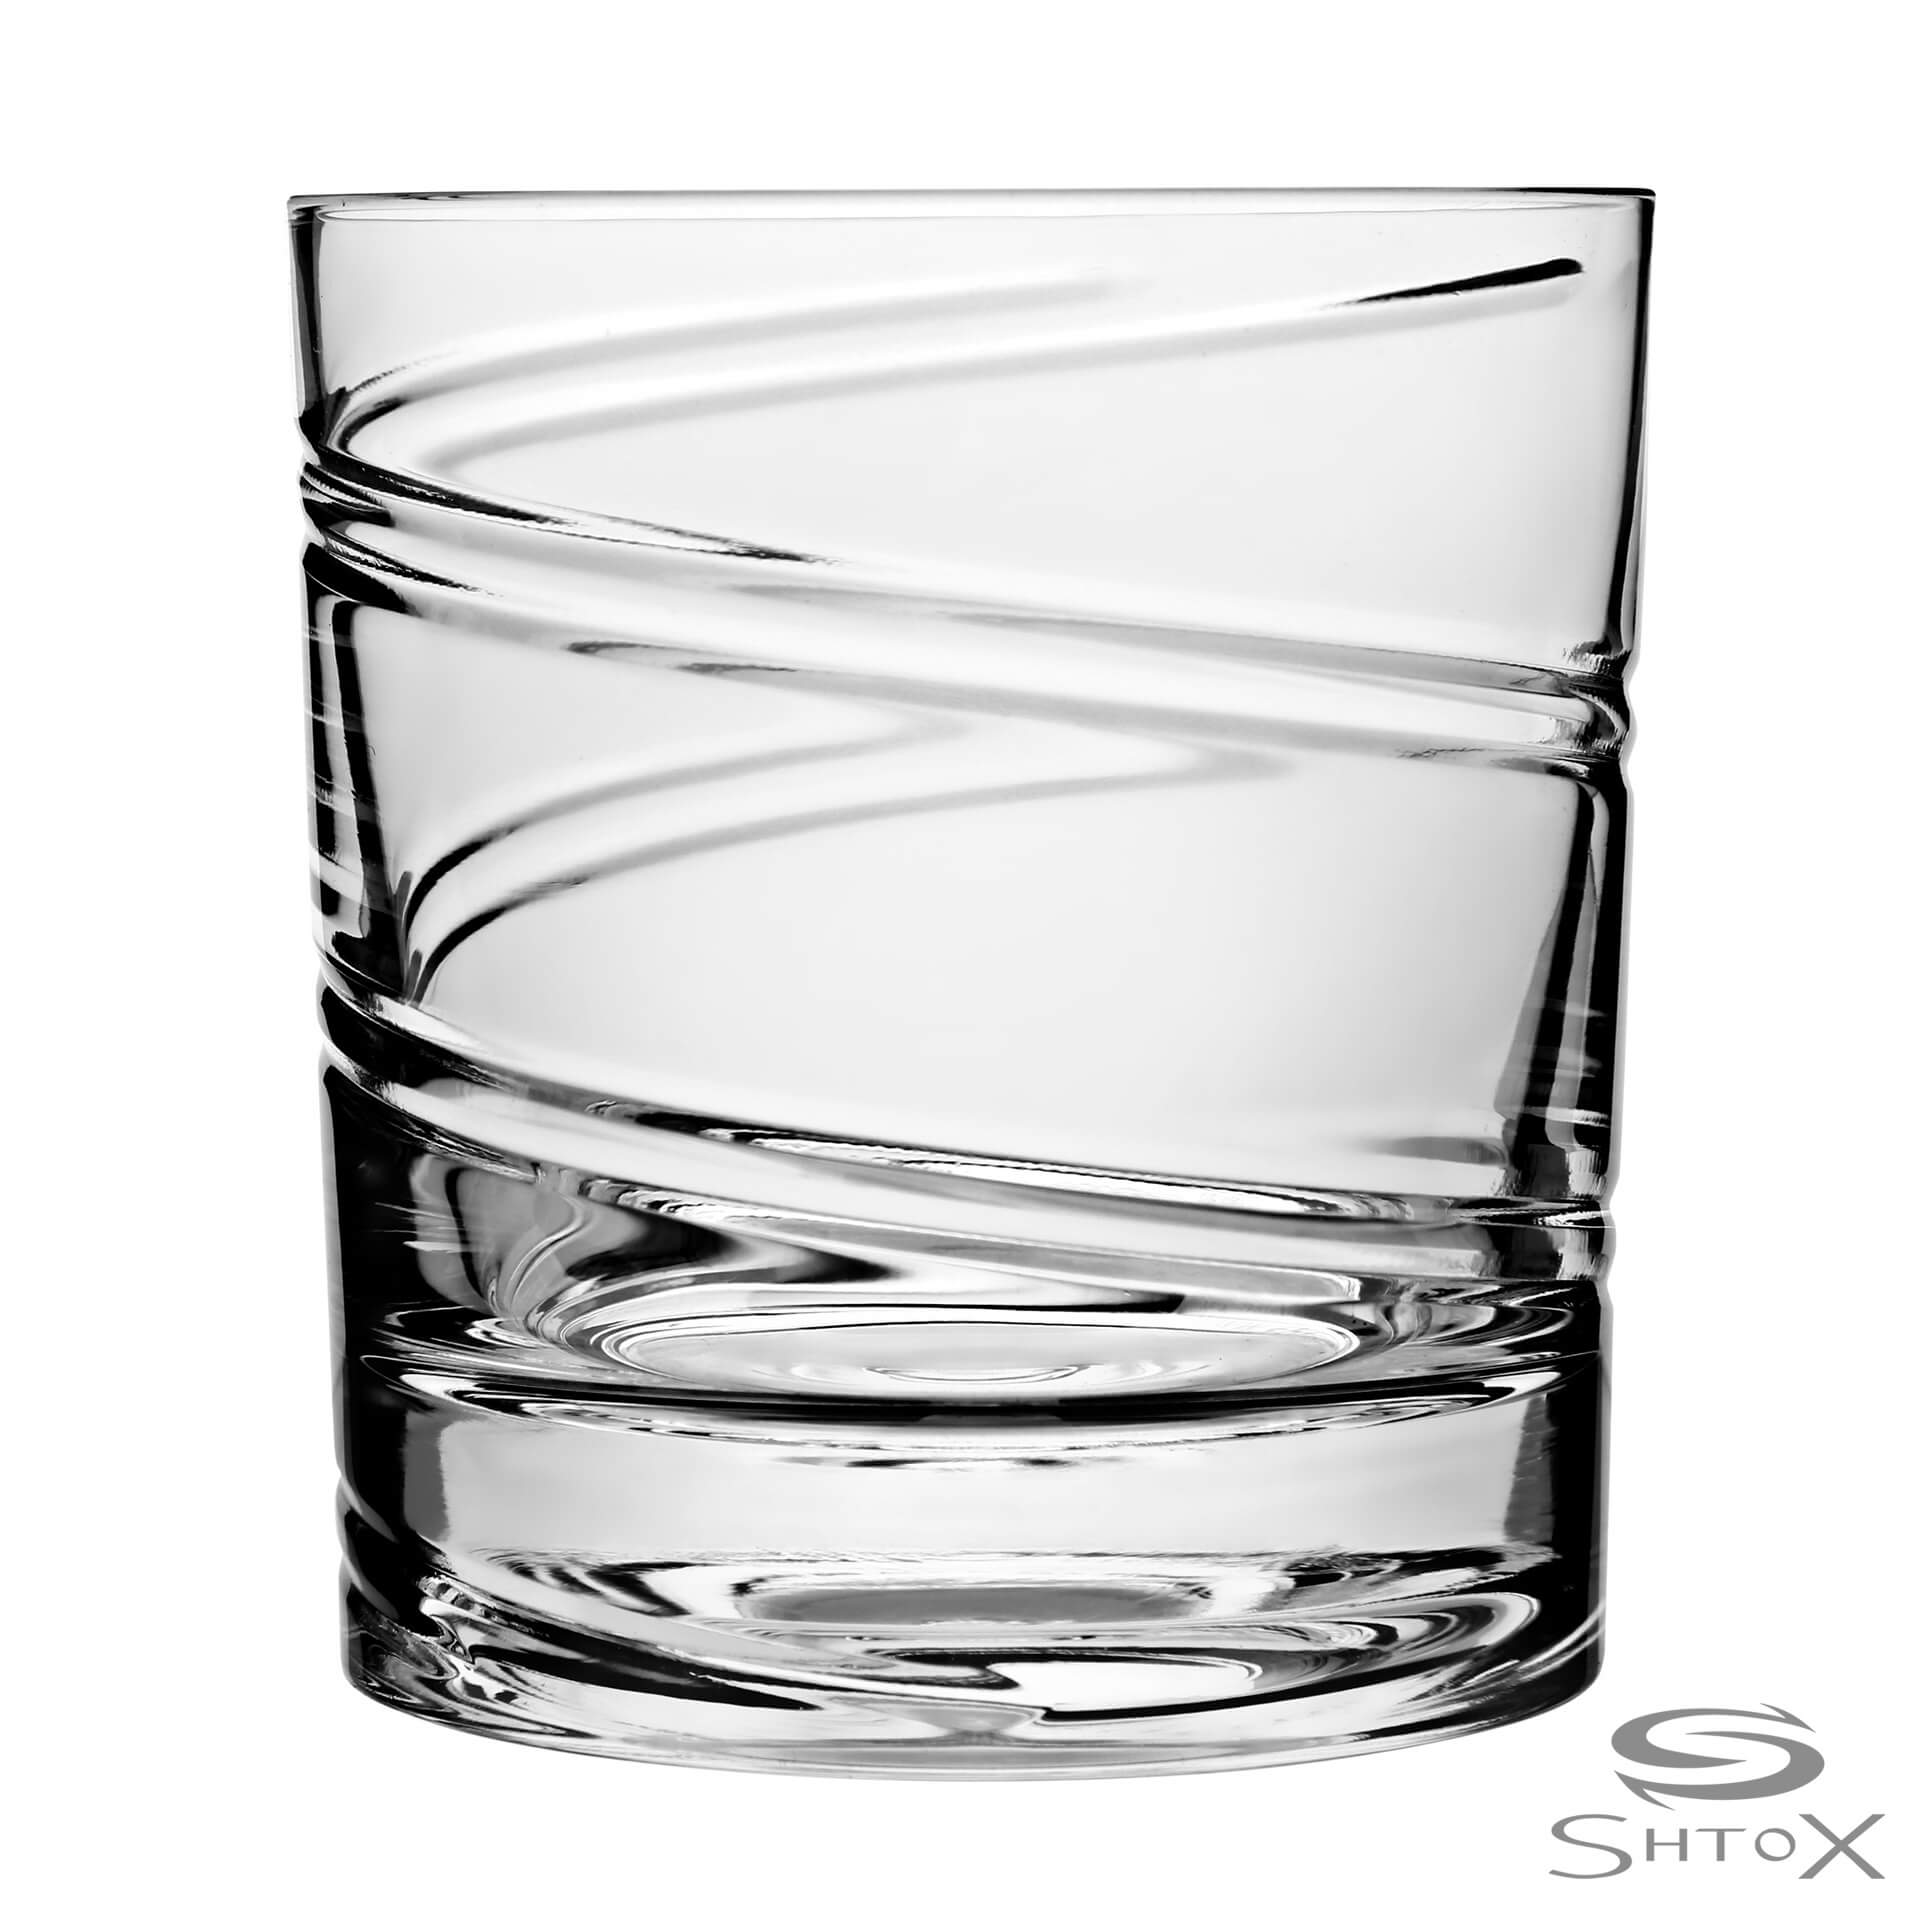 Shtox roterend whiskyglas (001) - Schreuder-kraan.shop